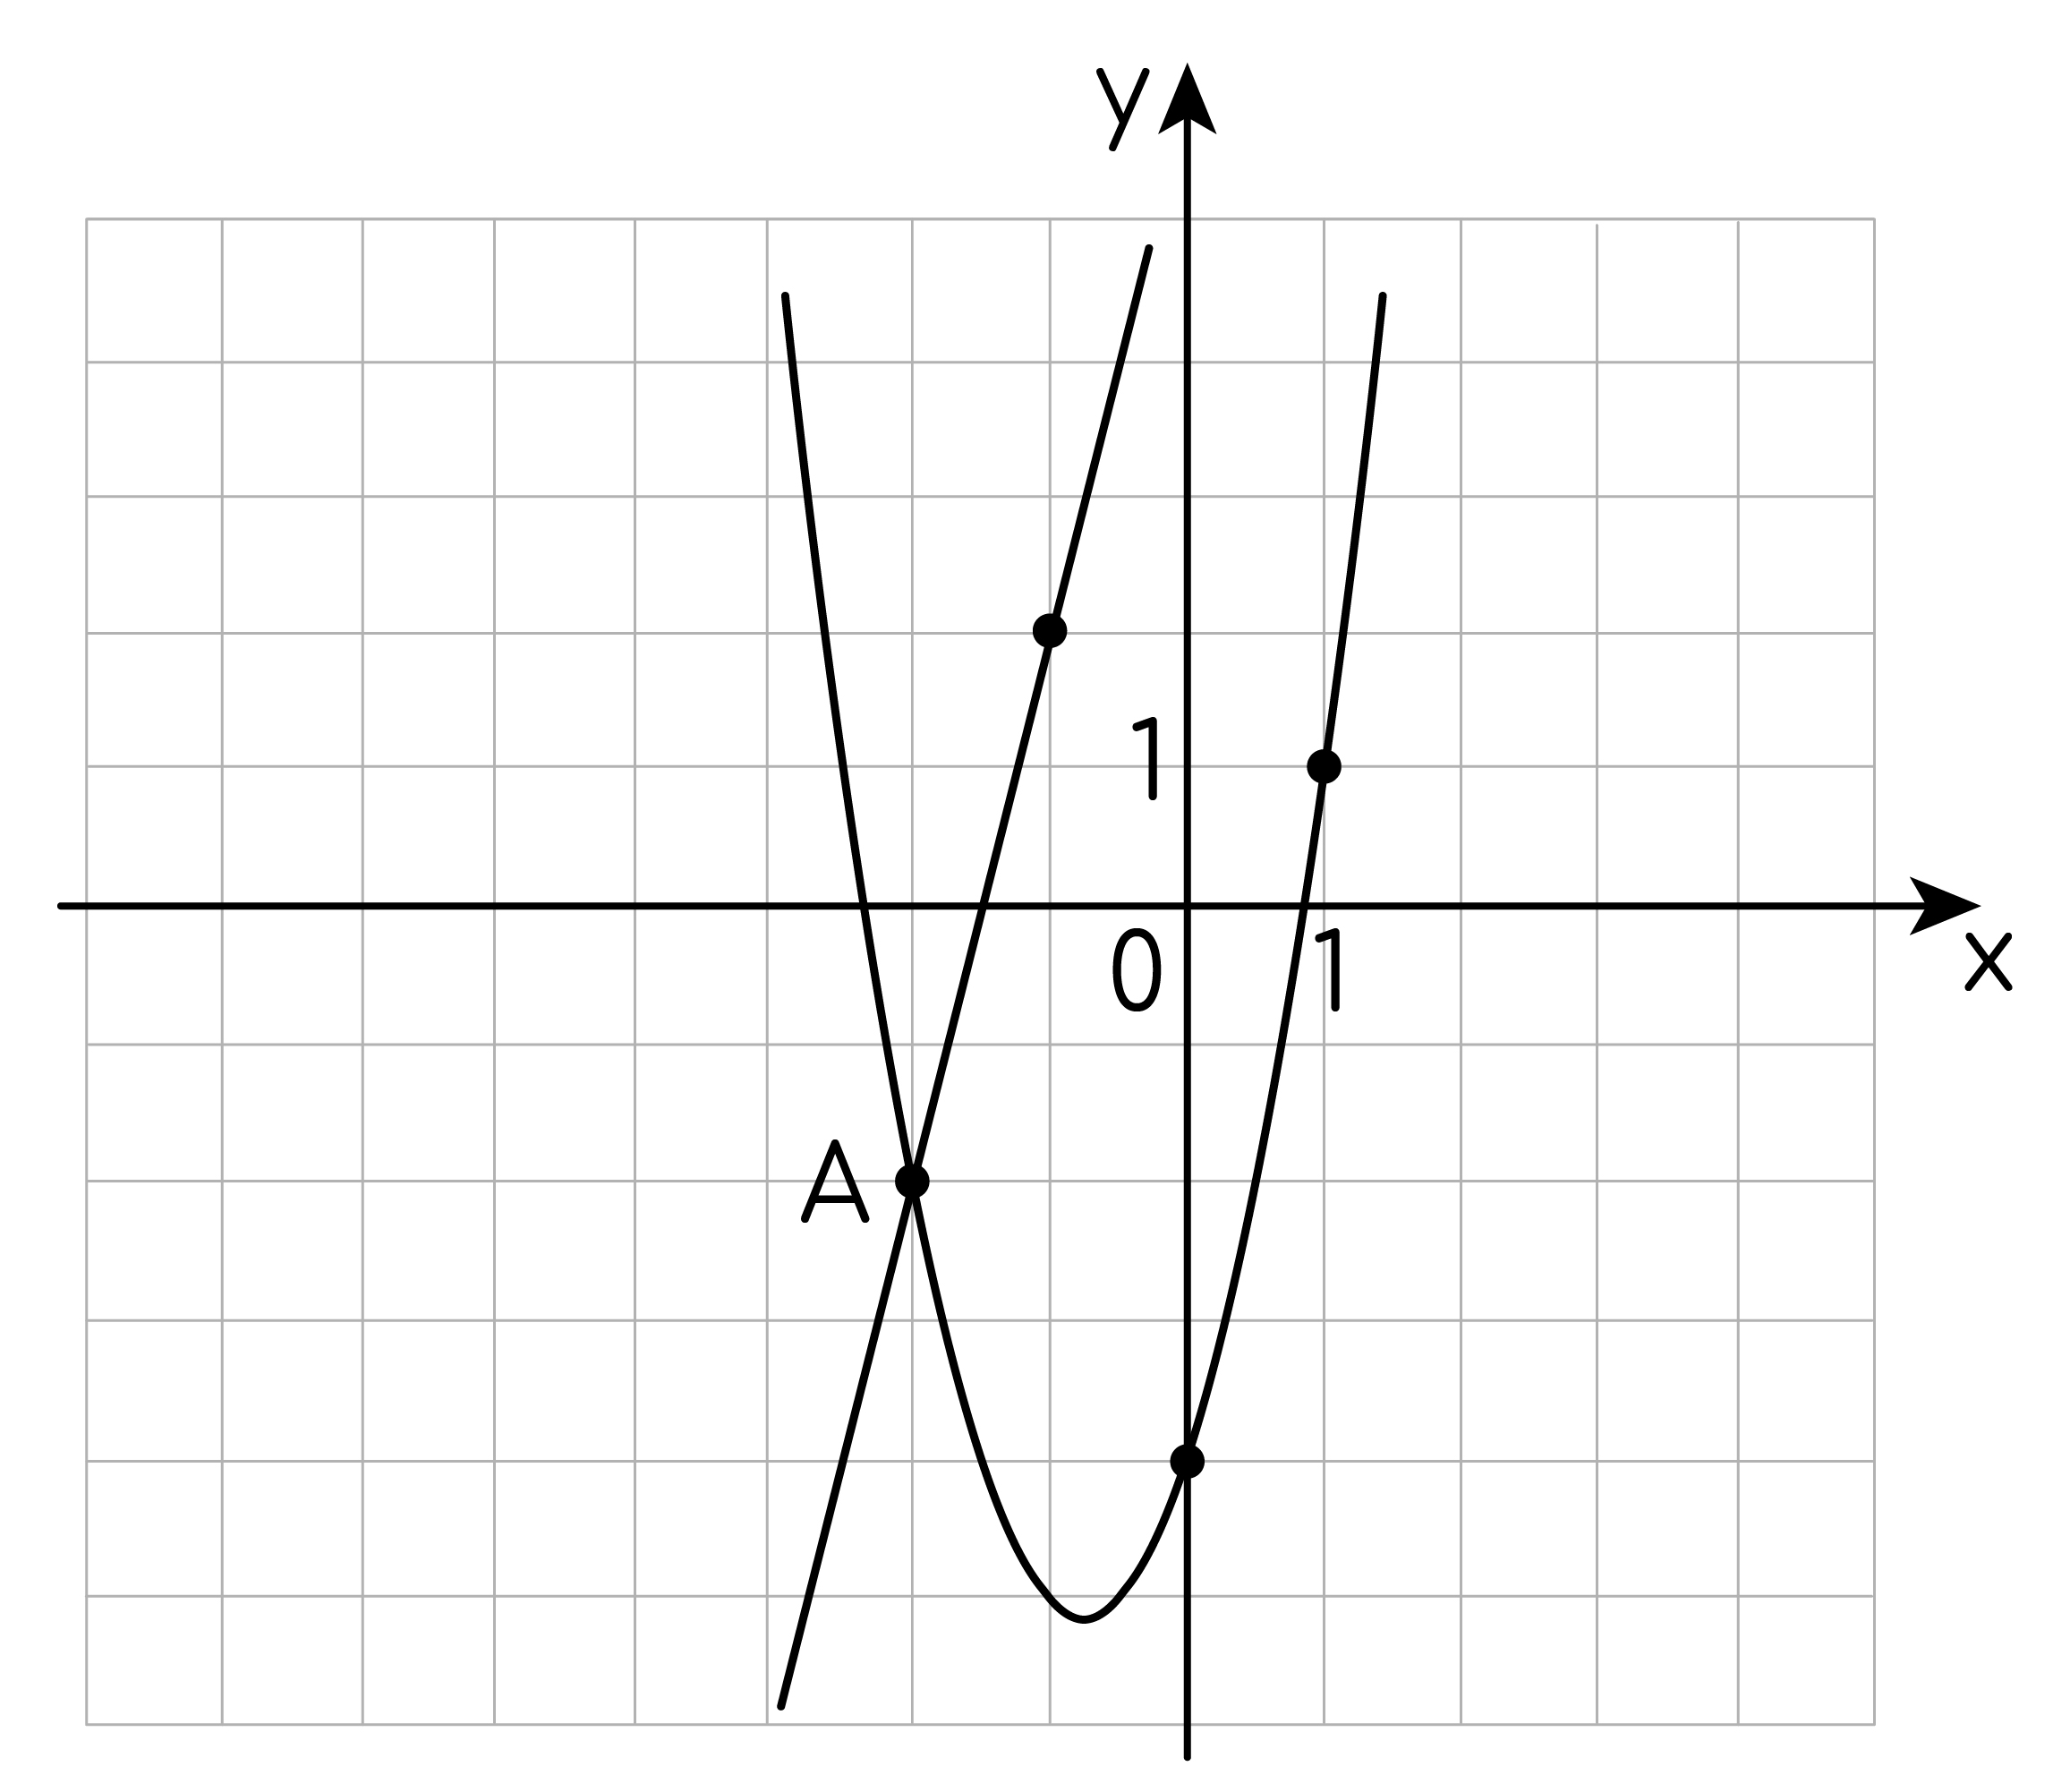 Ax2 7x c. Графики функций f(x)= ax2. F X ax2+BX+C. График функции y ax2+BX+C. График функции ax2+BX+C.